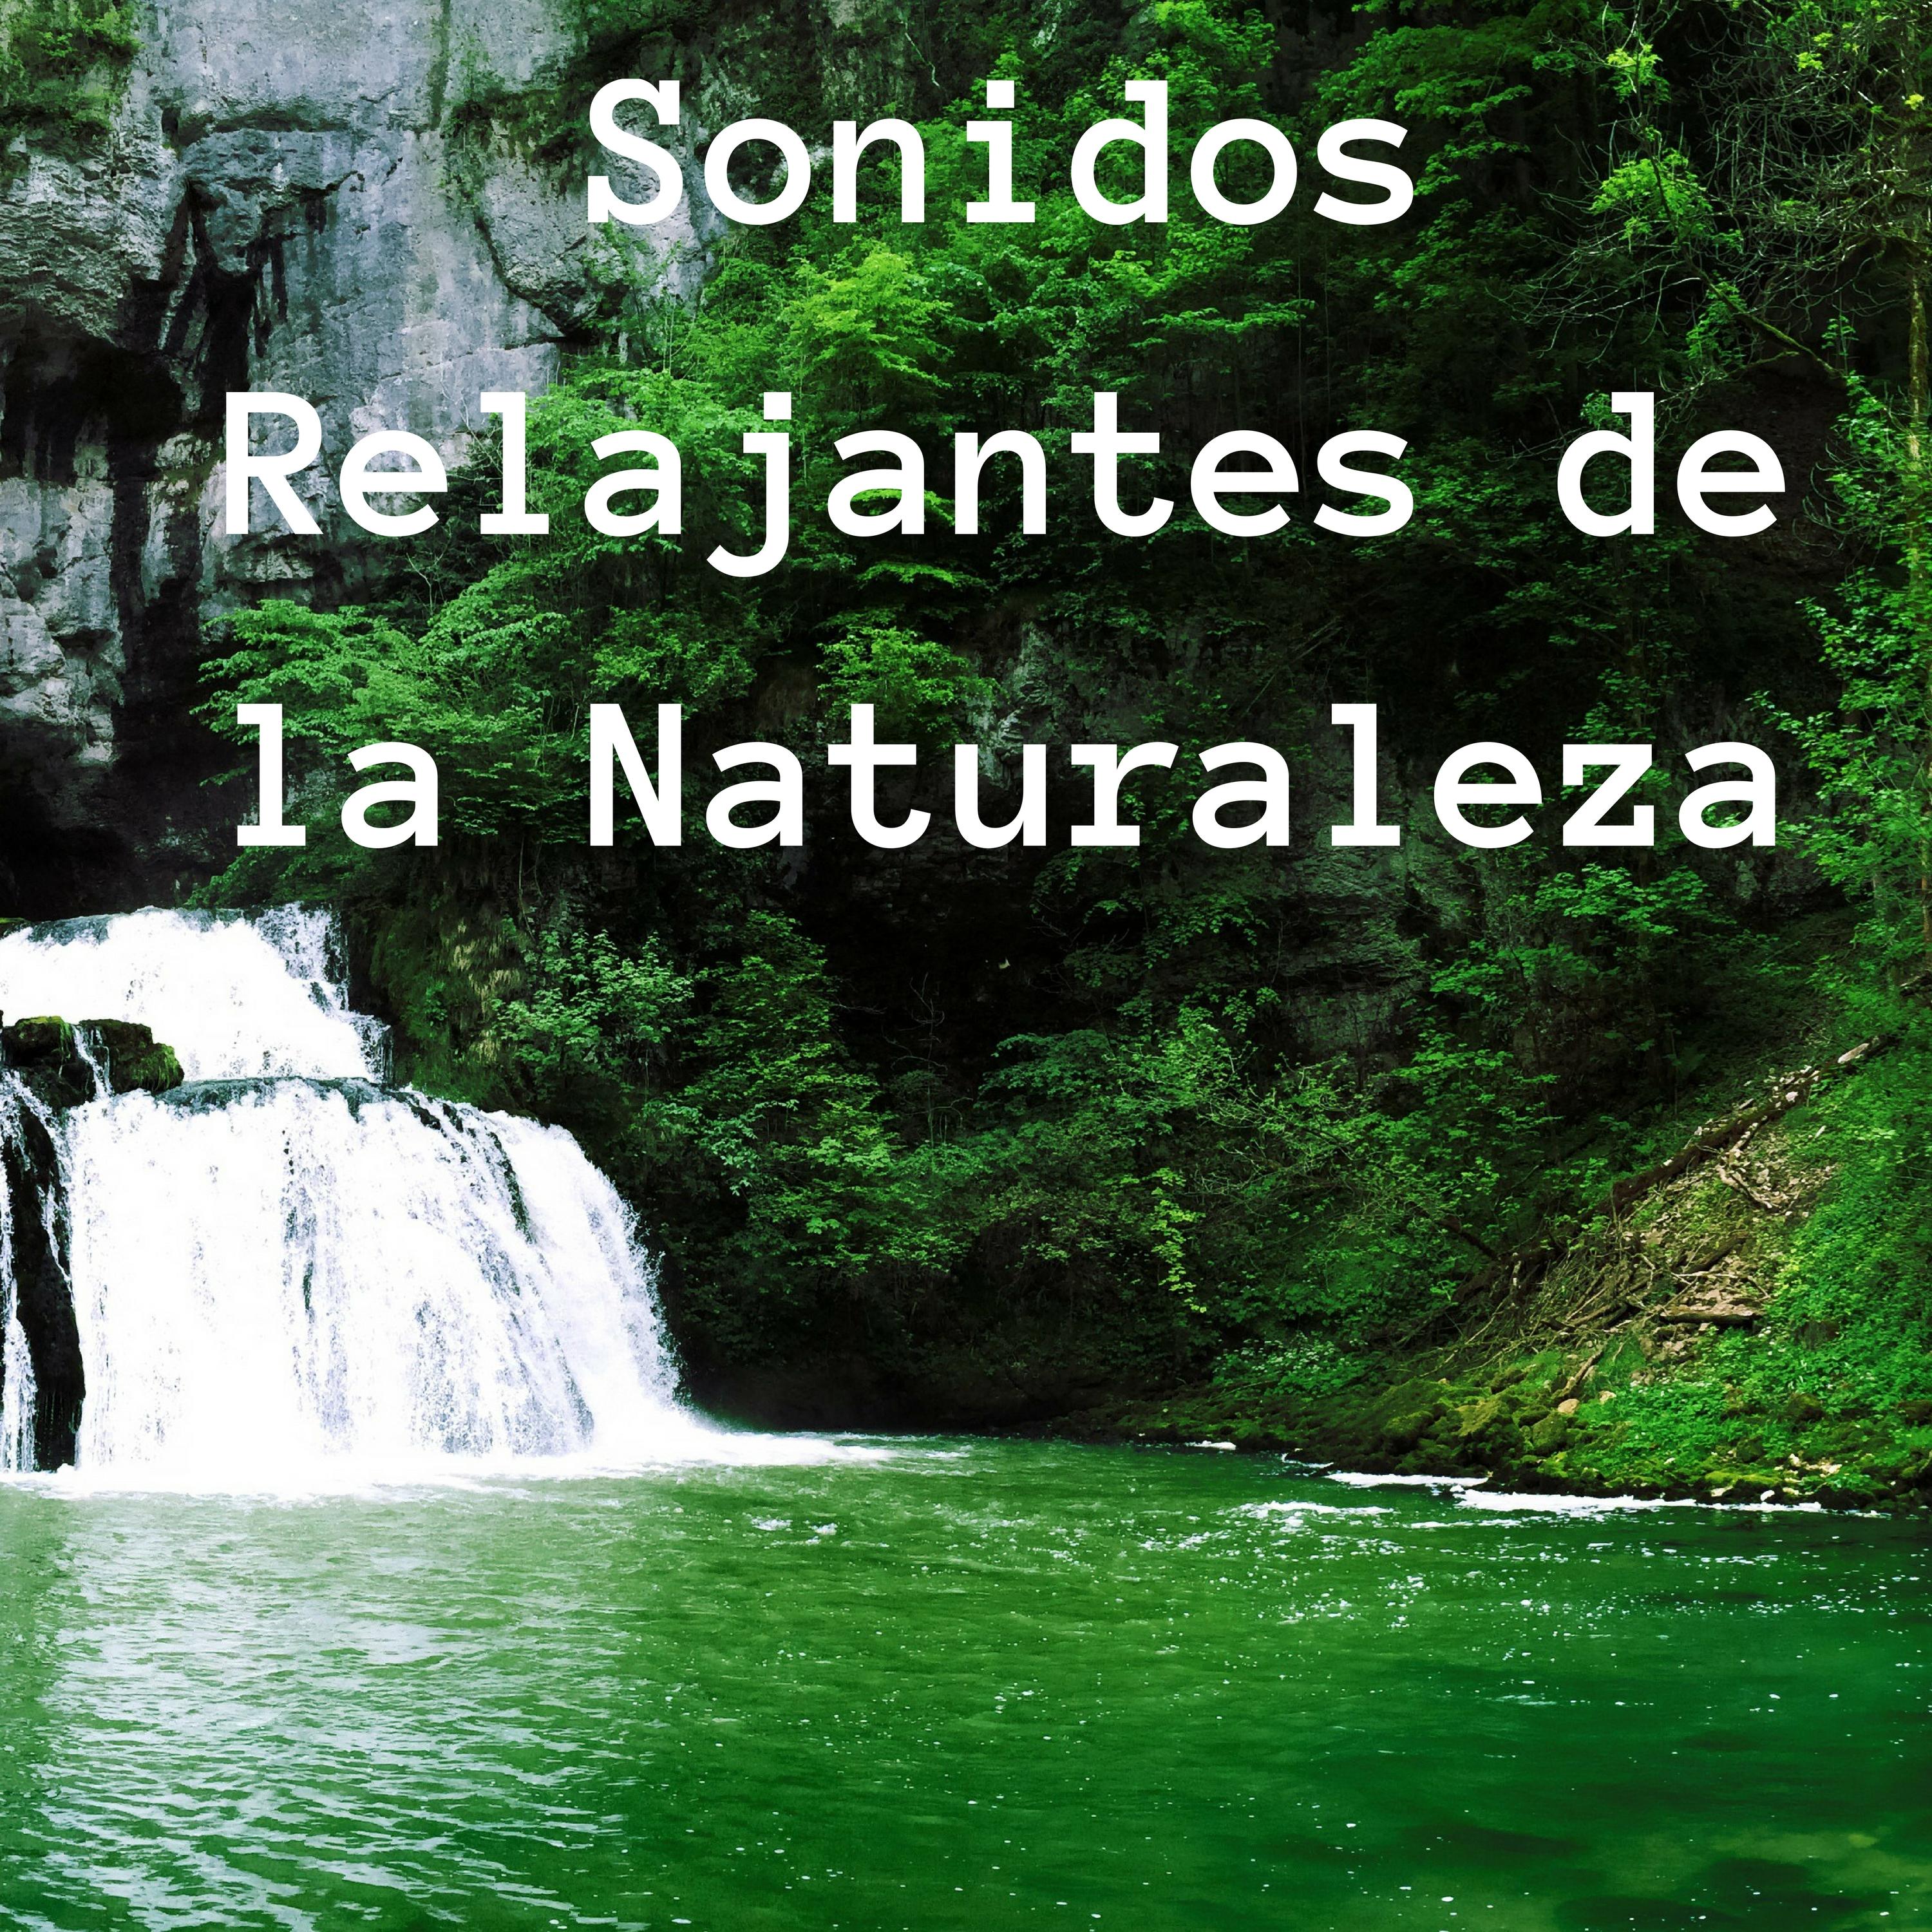 Sonidos Relajantes de la Naturaleza - Composiciones para Desechar los Pensamientos Negativo y Lograr la Paz Emocional